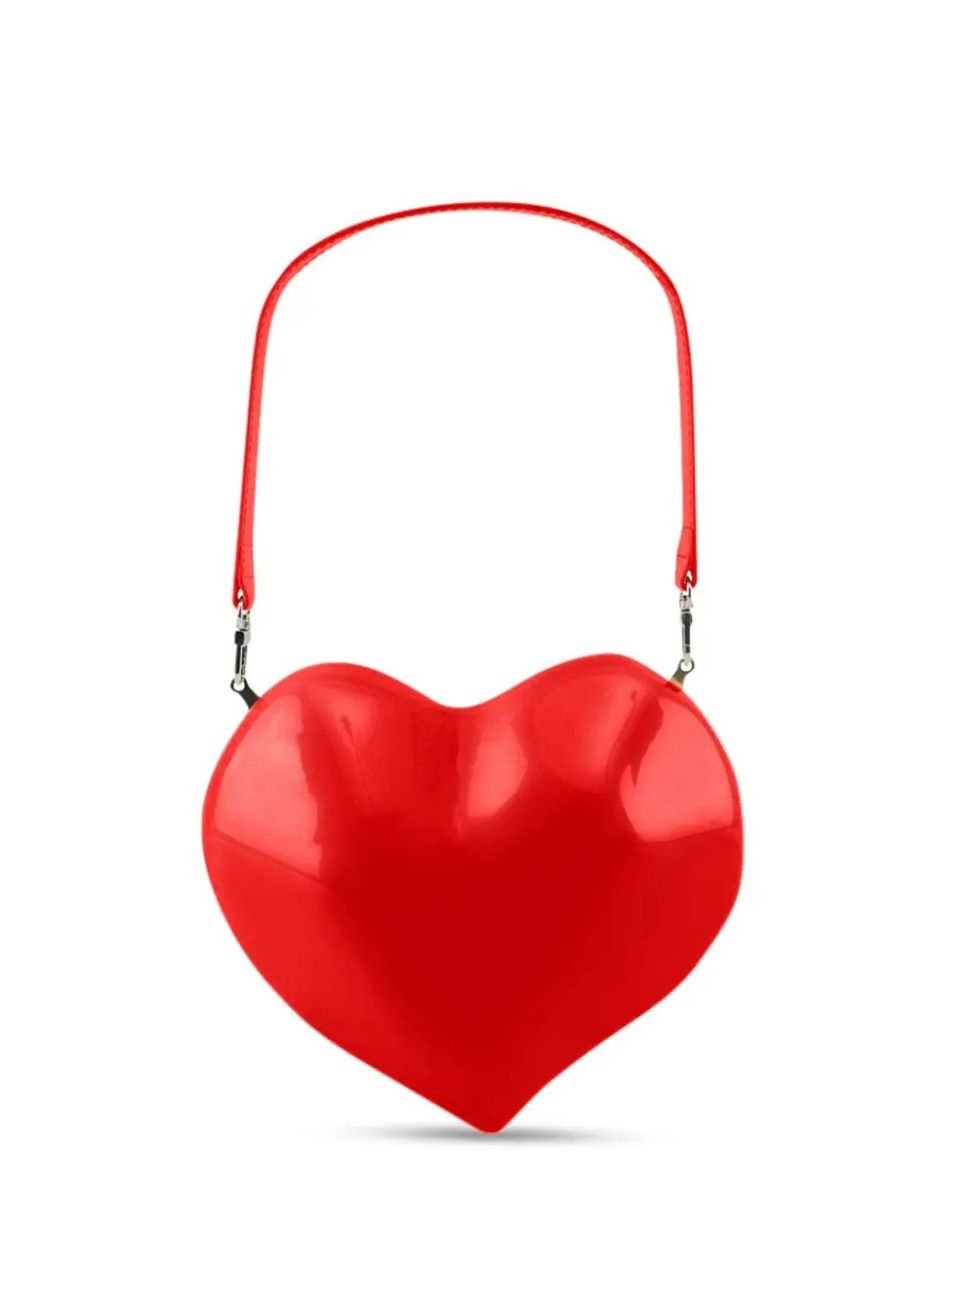 情人節女友禮物「愛心包」推薦！lv、dior、gucci等精品與小眾品牌「心型包包」特搜